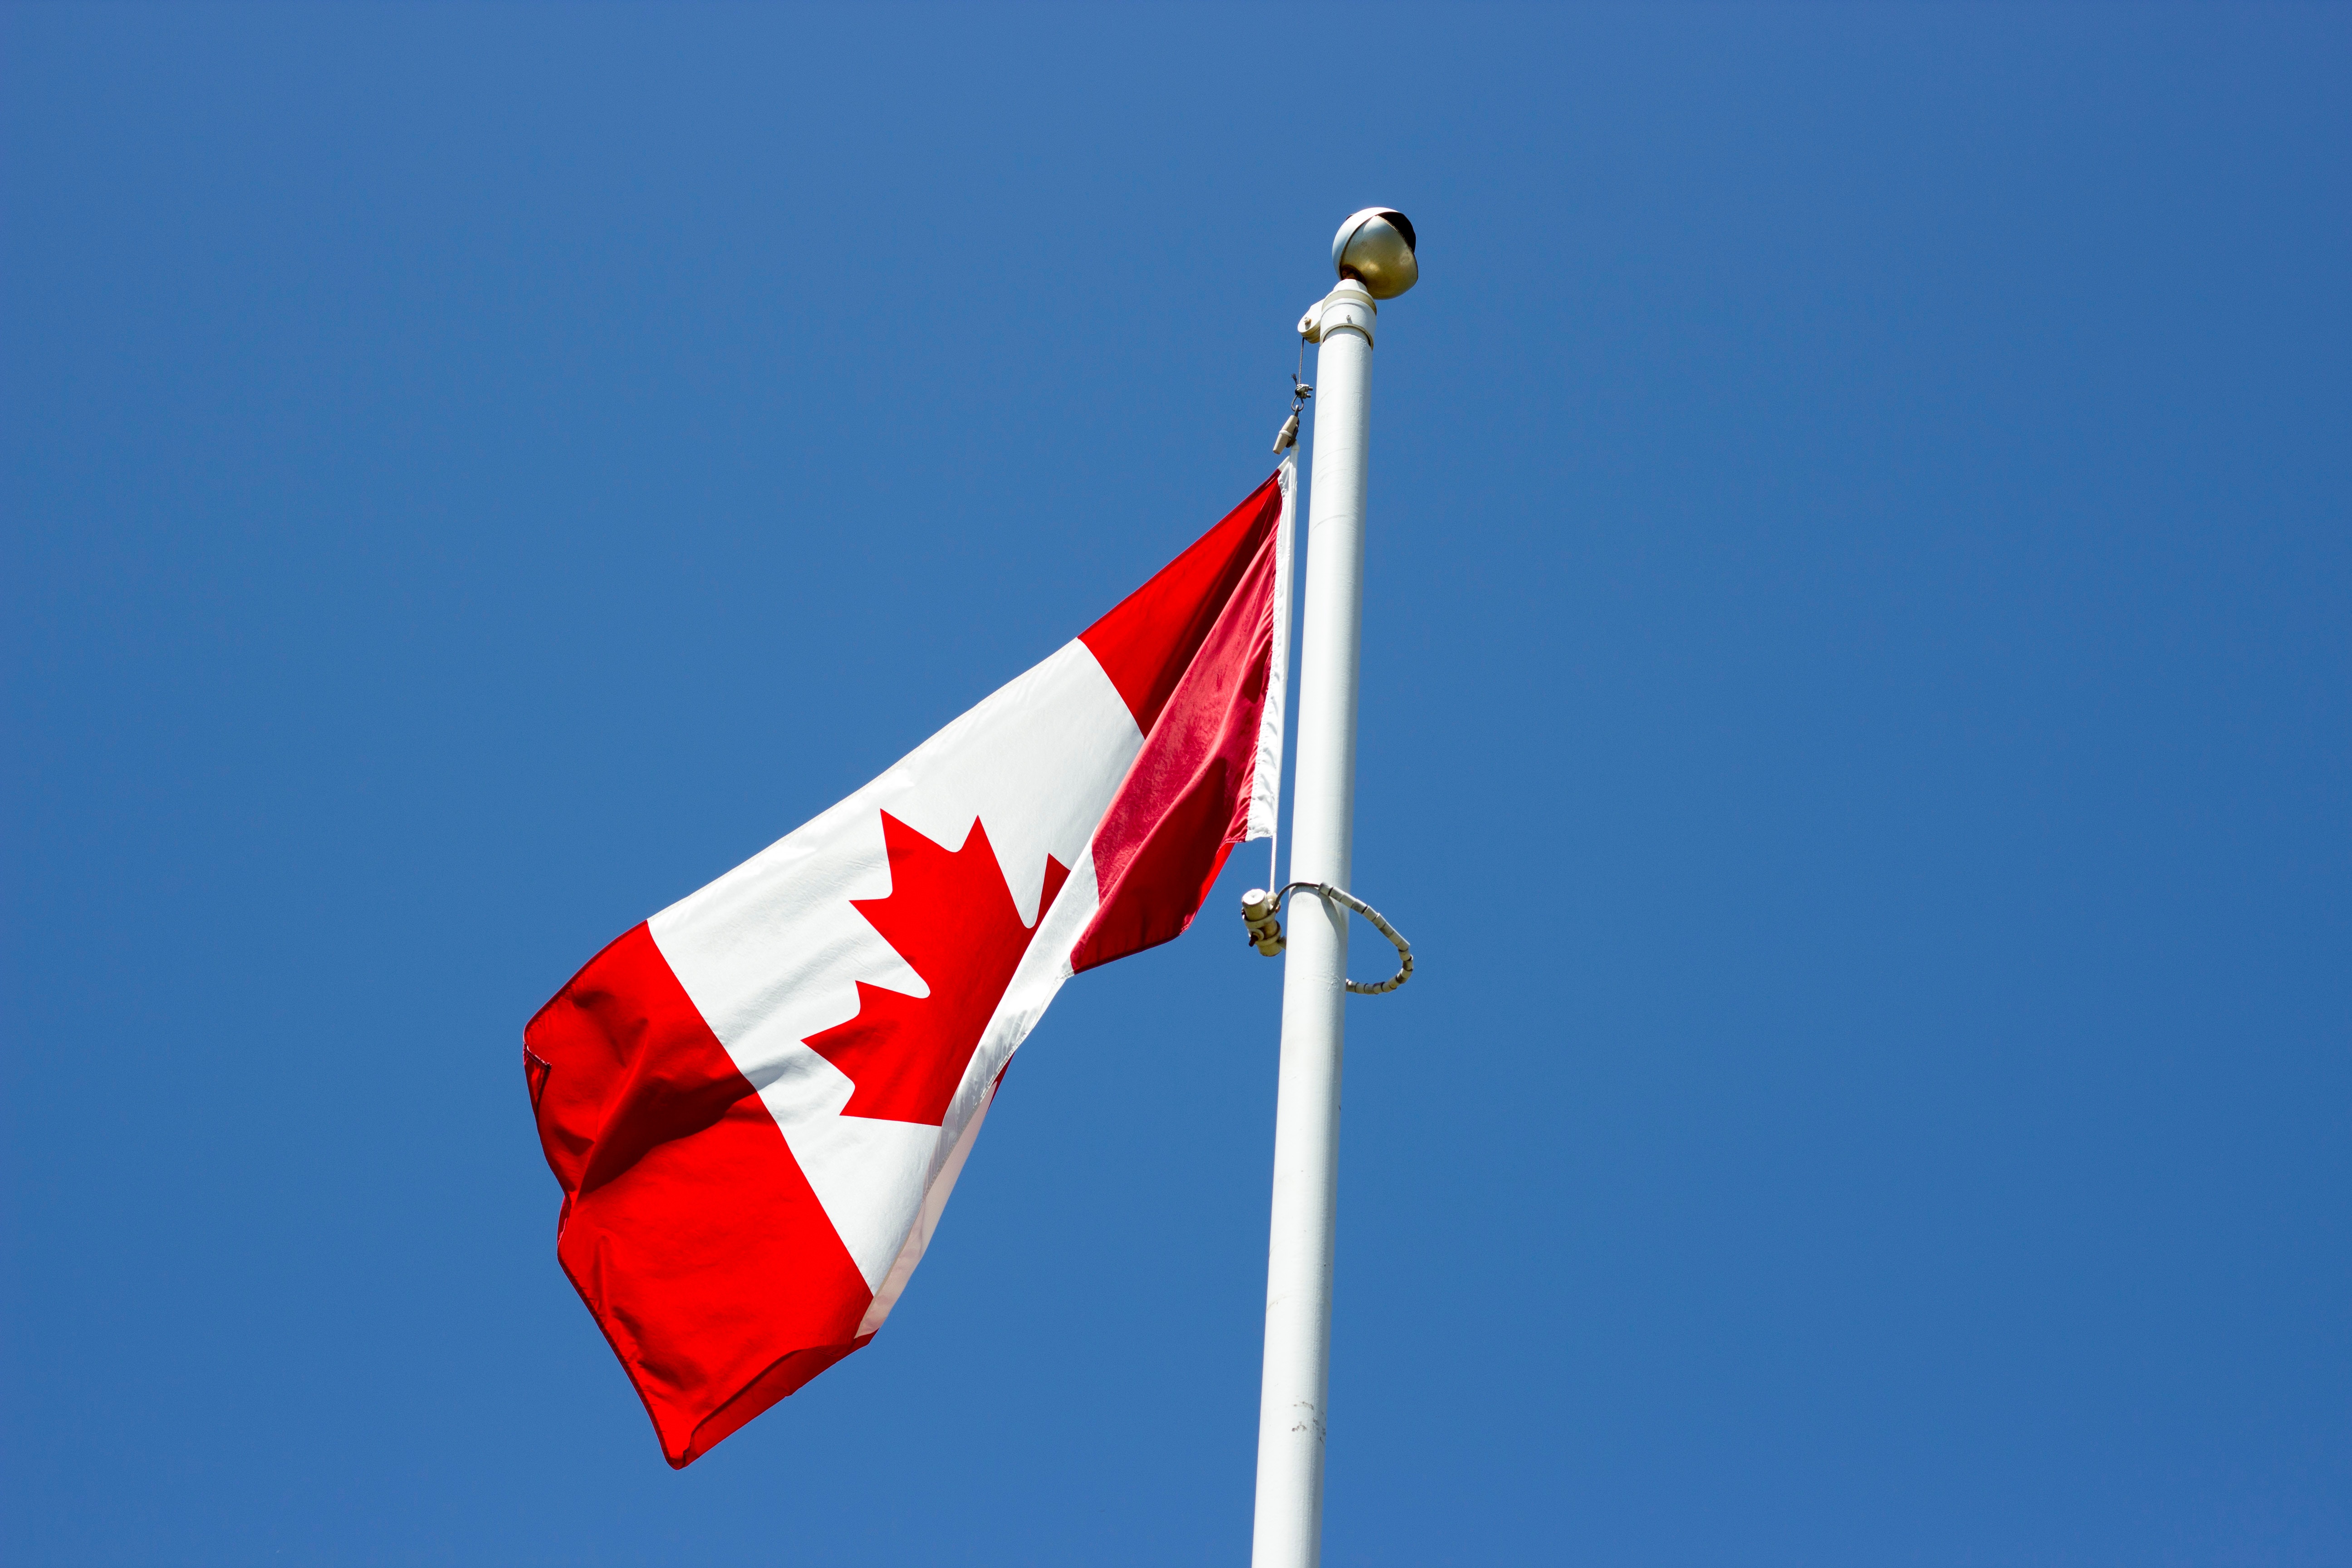 Peckford: Mainstream Parties Do Not Deserve to Govern Canada